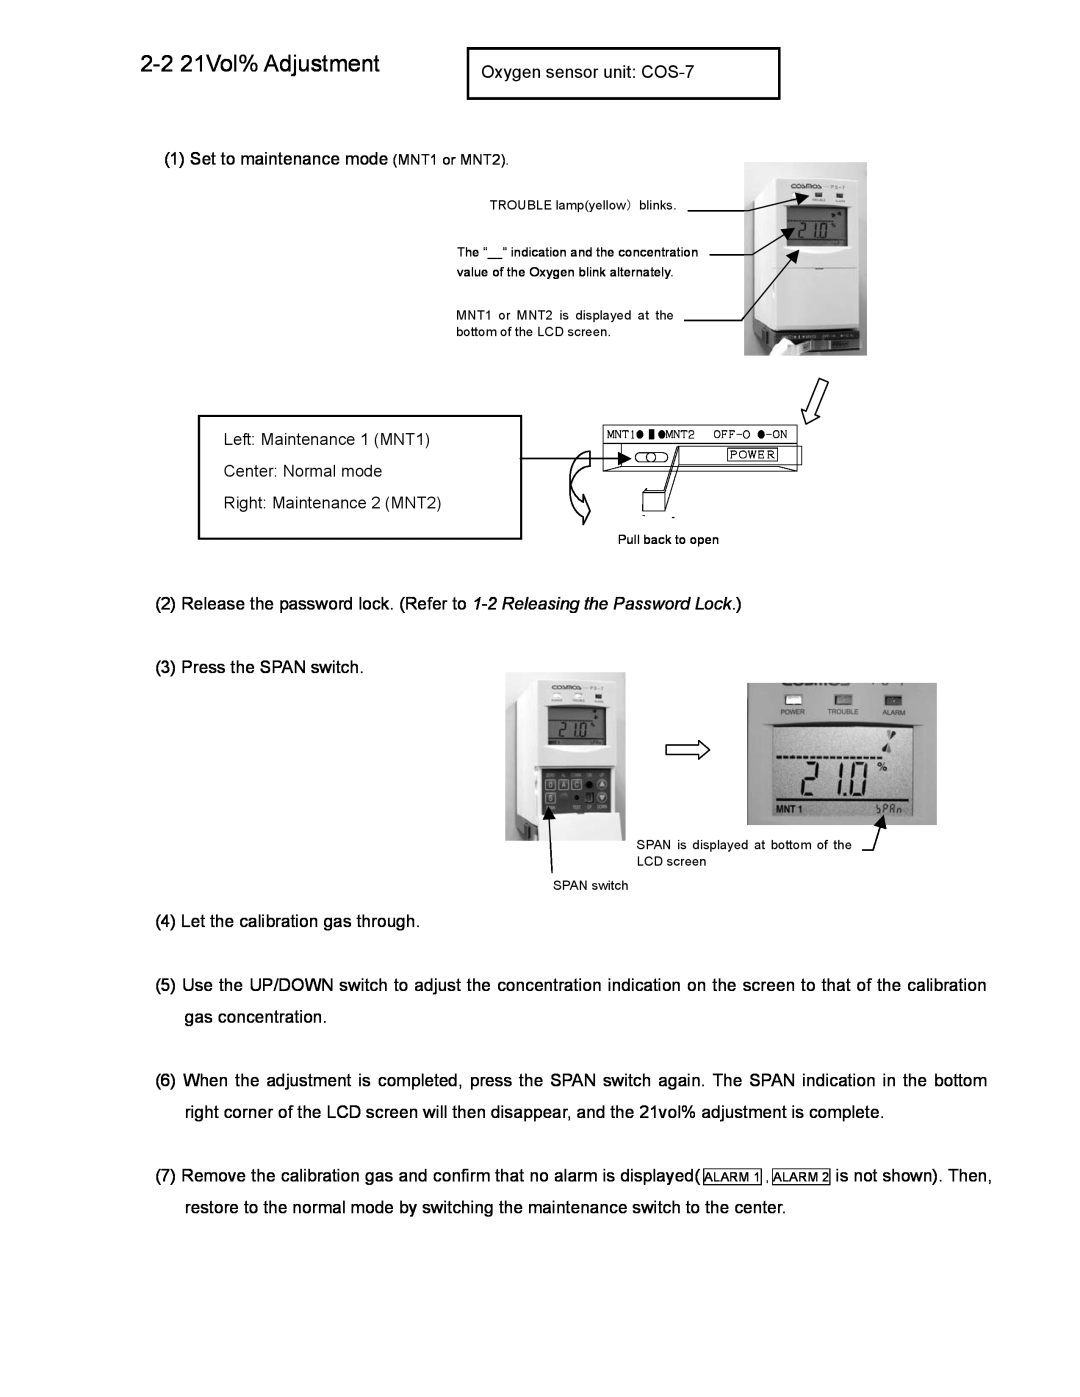 DOD PS-7 operation manual 2-221Vol% Adjustment 